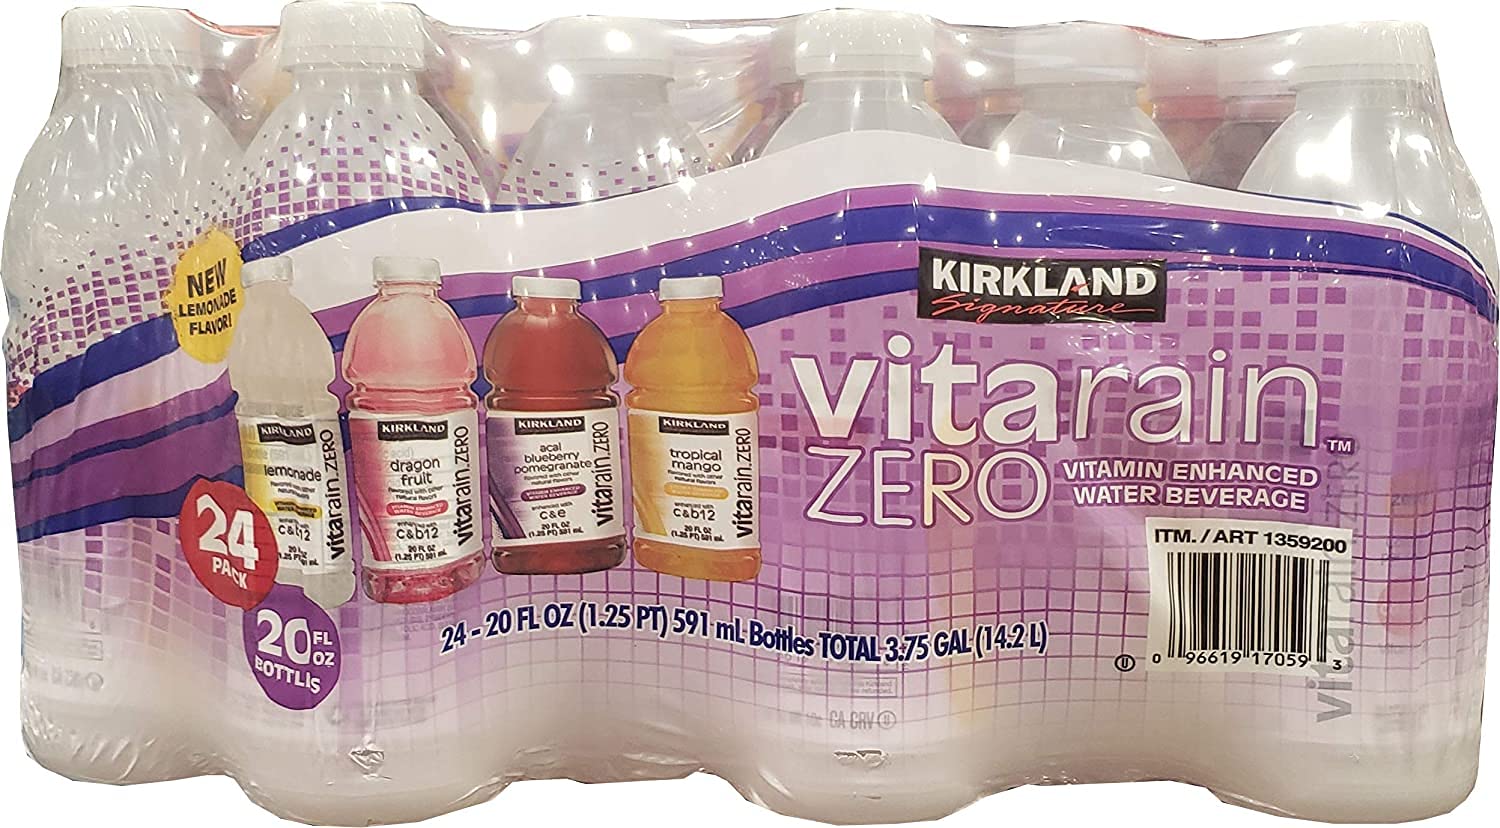 Kirkland Vitarain Zero Water Beverage 20floz 24pk